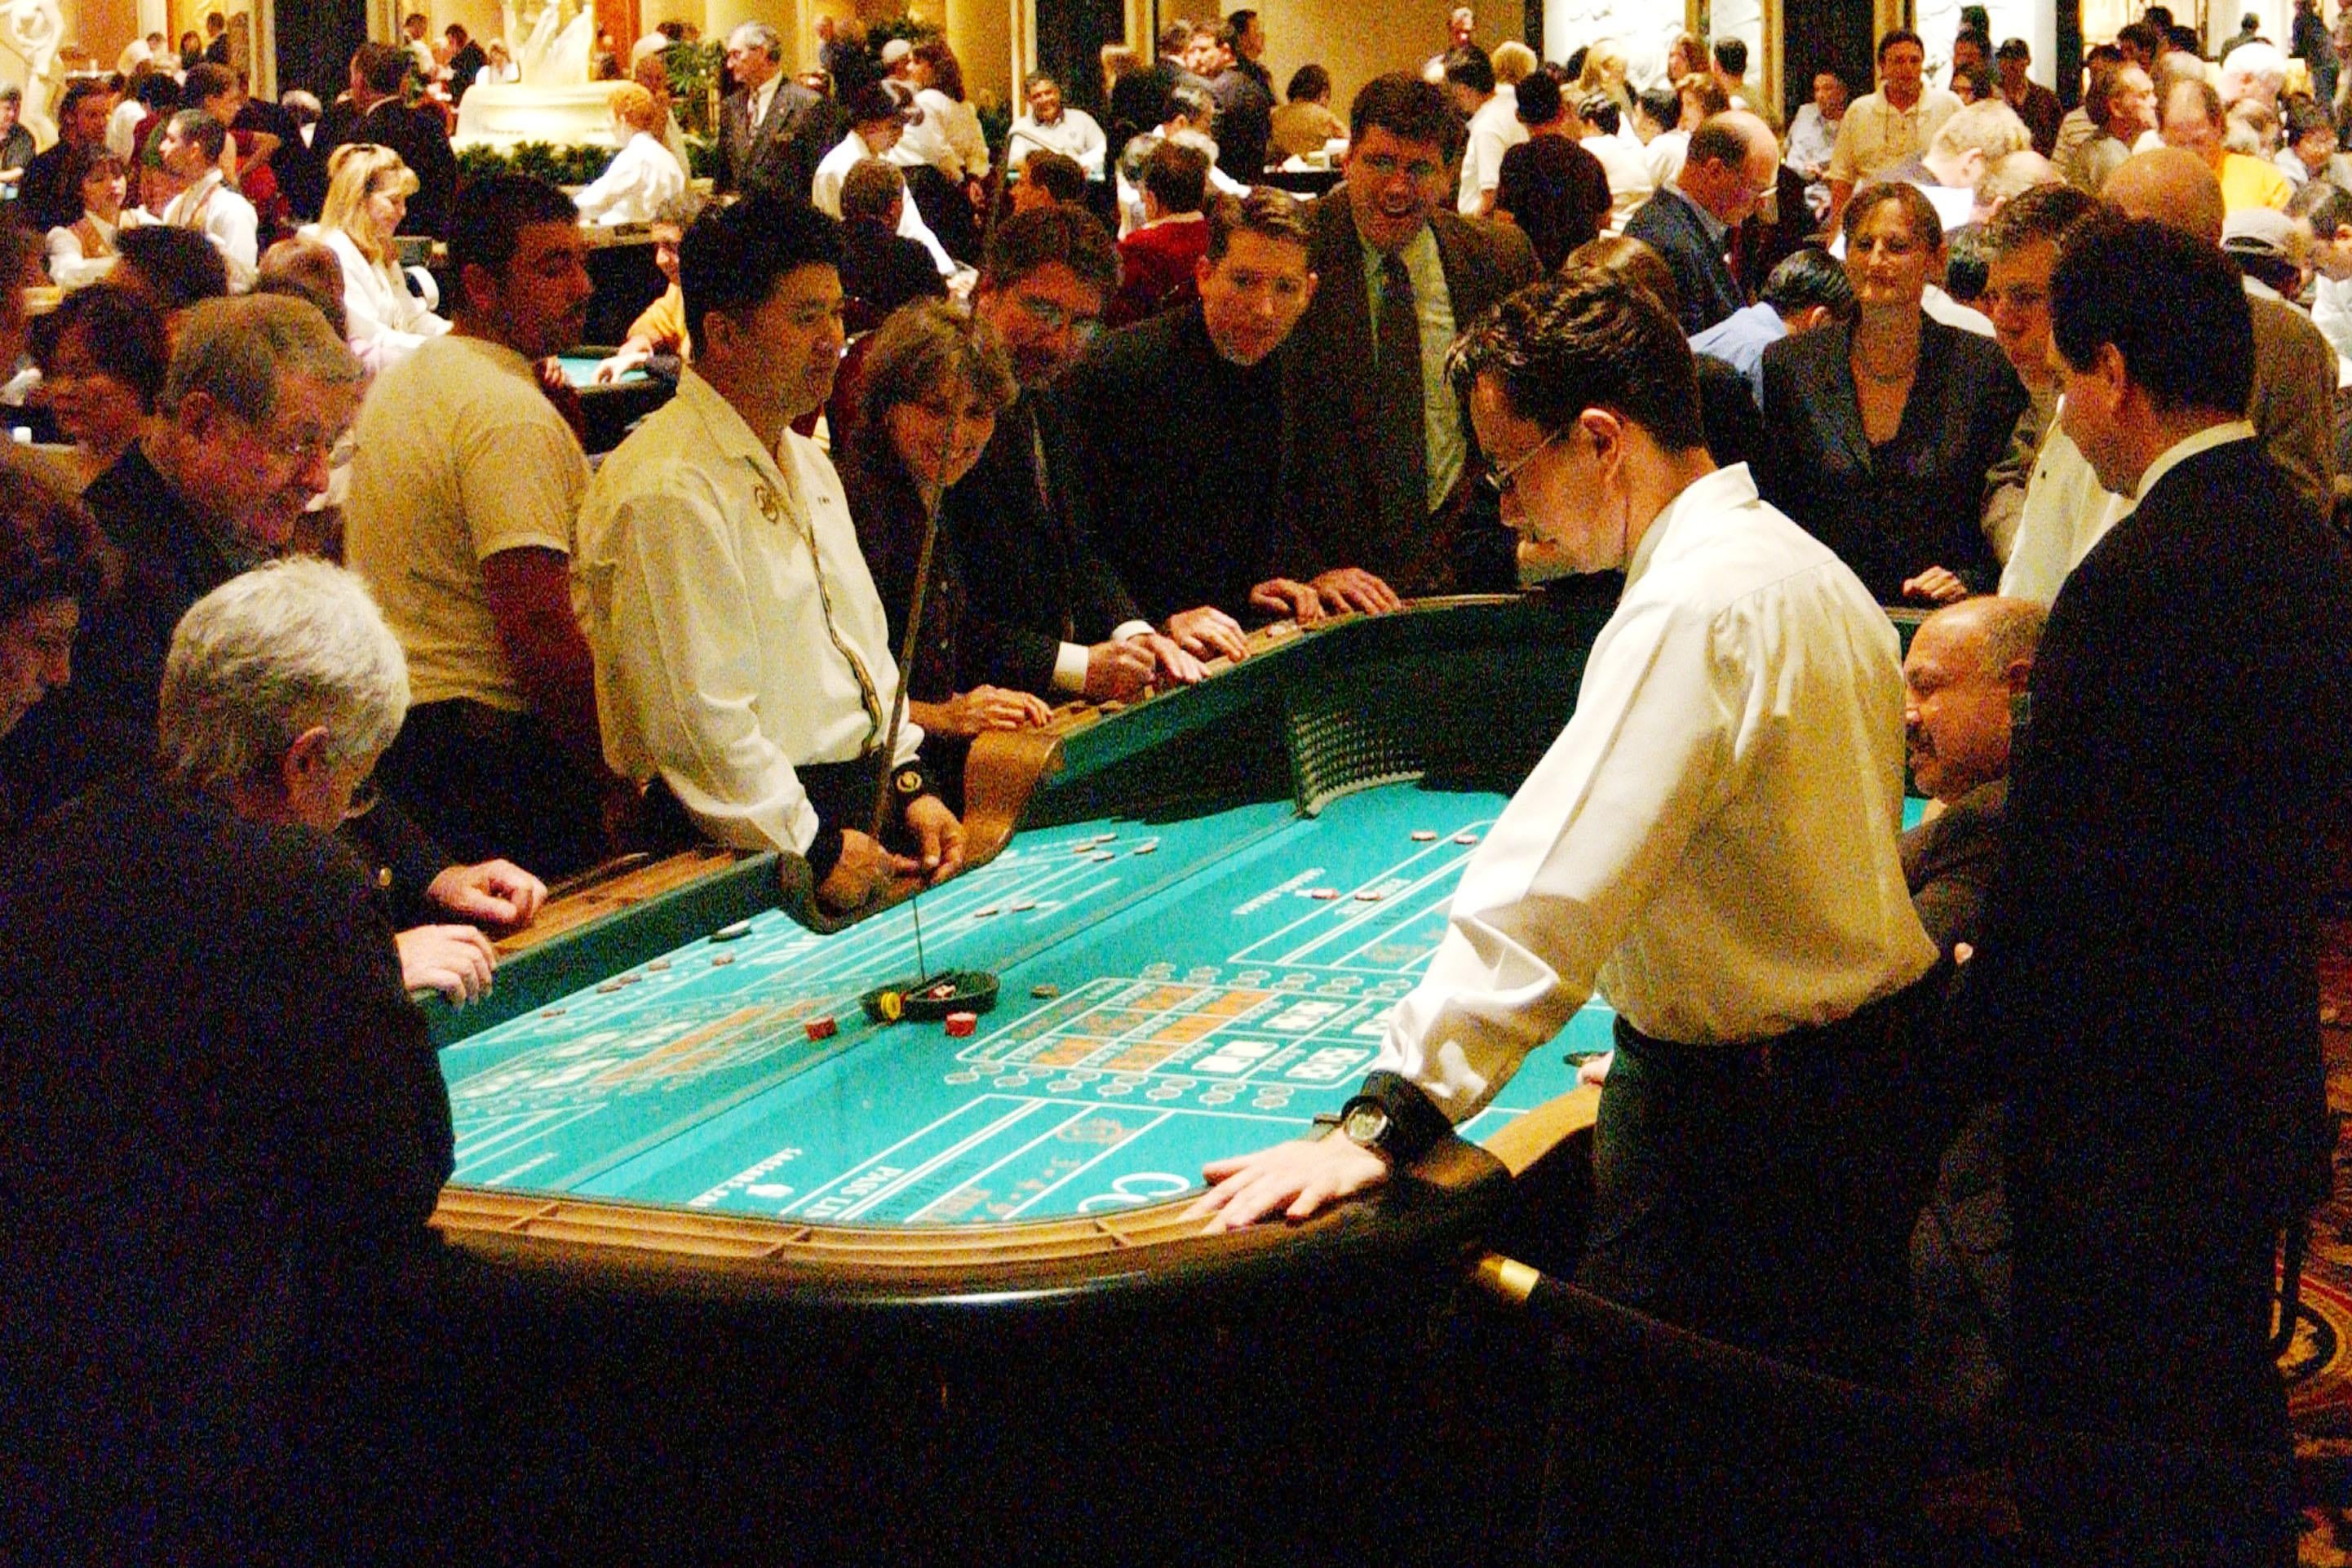 Gamblers play craps at a casino in Vegas